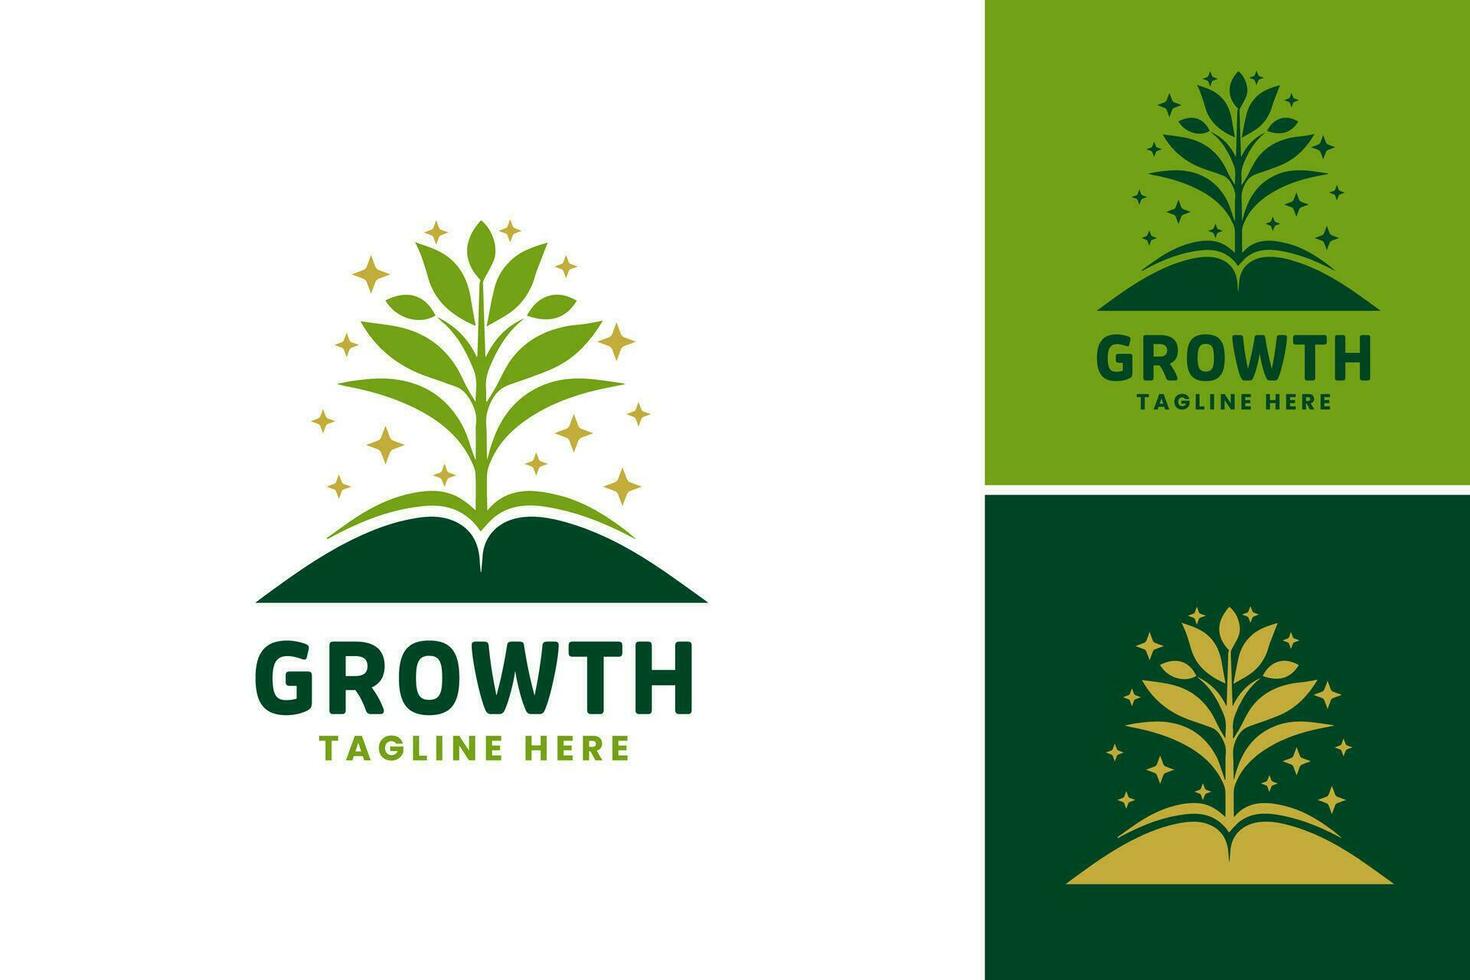 crescita logo modello è un' design risorsa adatto per aziende o organizzazioni quello volere per trasmettere crescita, progresso, o sviluppo nel loro marchio. vettore